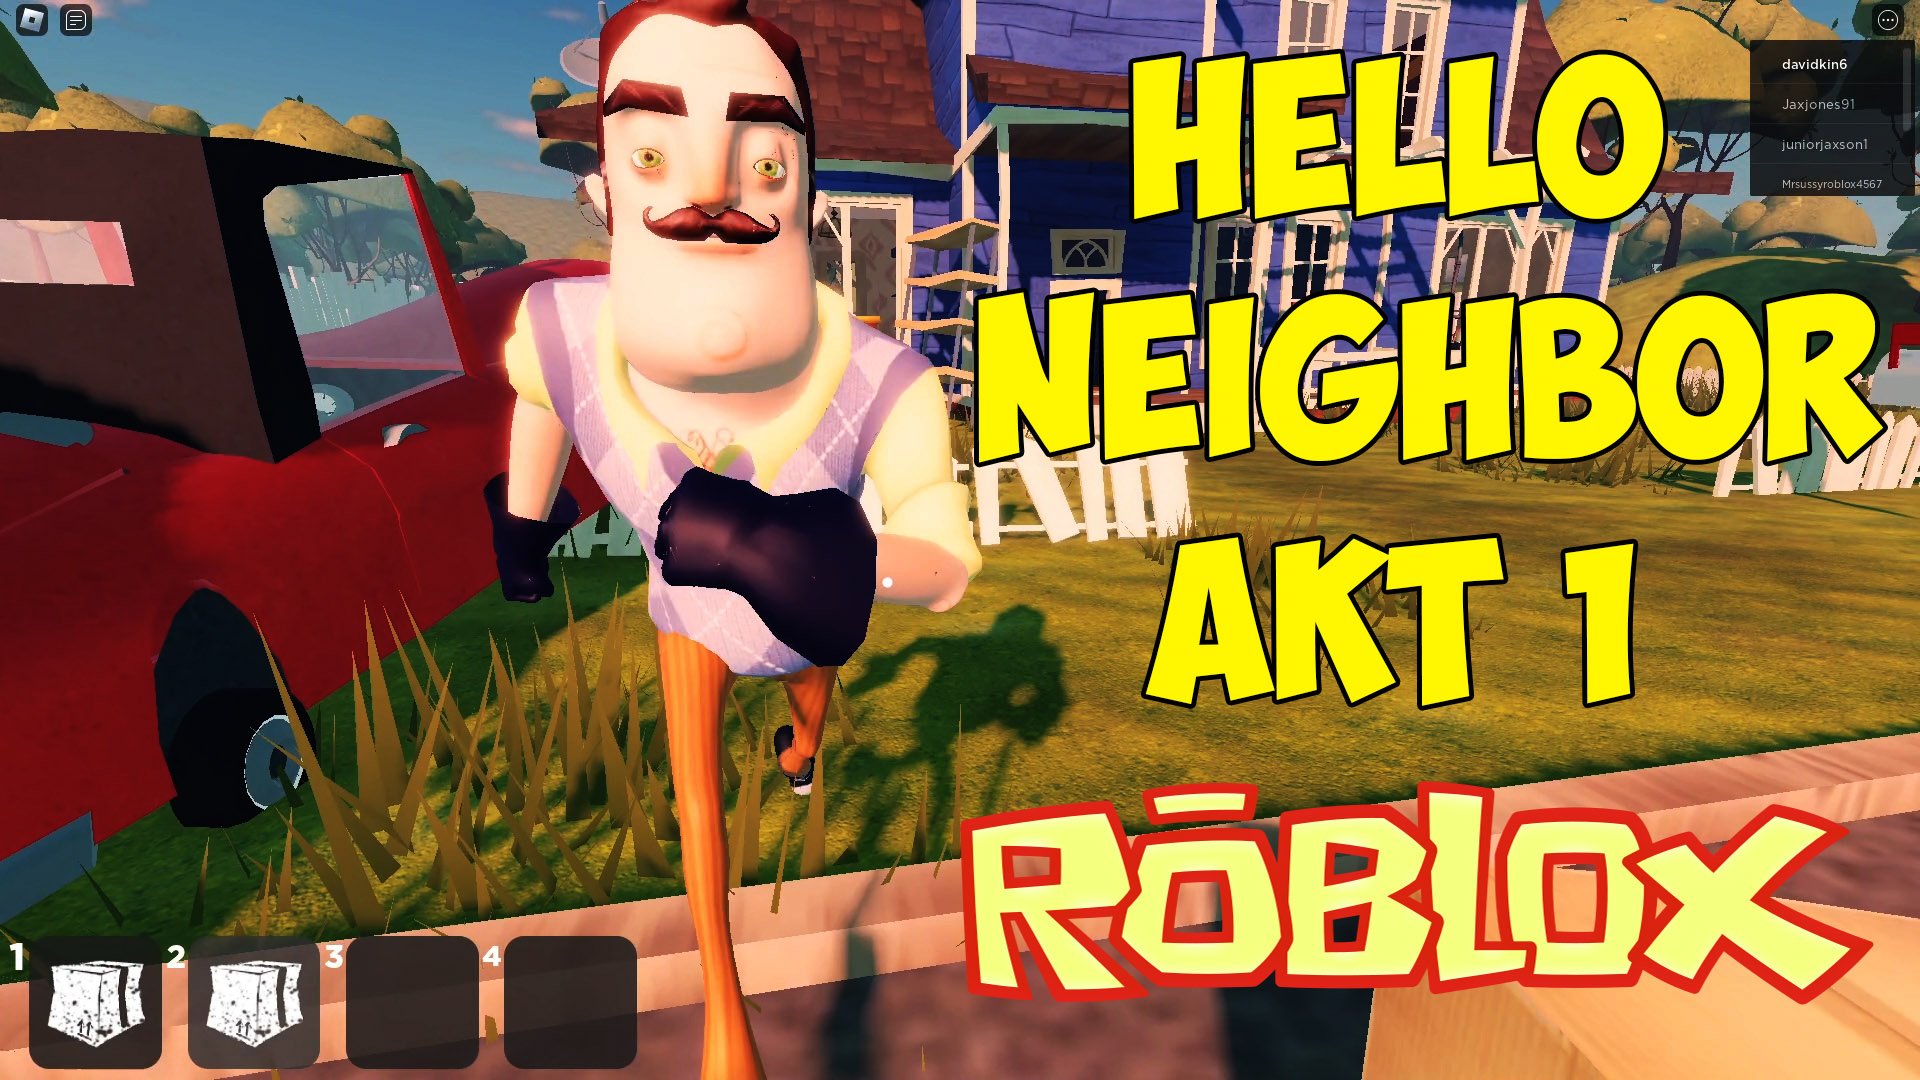 Роблокс привет сосед акт 2. Привет сосед РОБЛОКС. Привет сосед РОБЛОКС акт 1. Видео привет сосед.